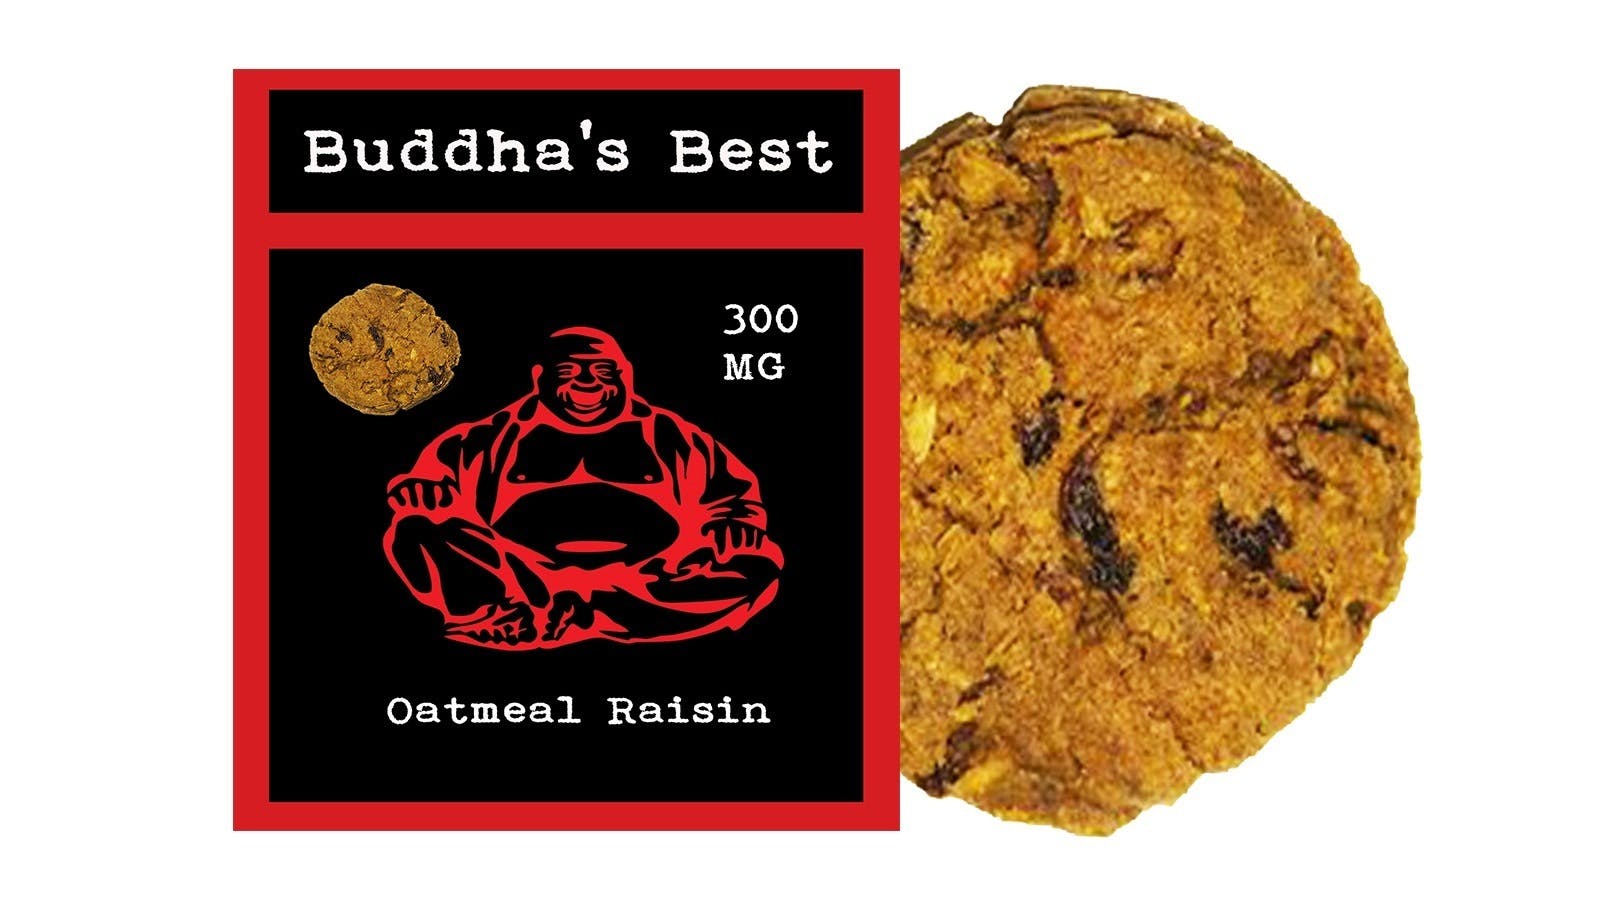 edible-buddhas-best-ar-oatmeal-raisin-cookie-300mg